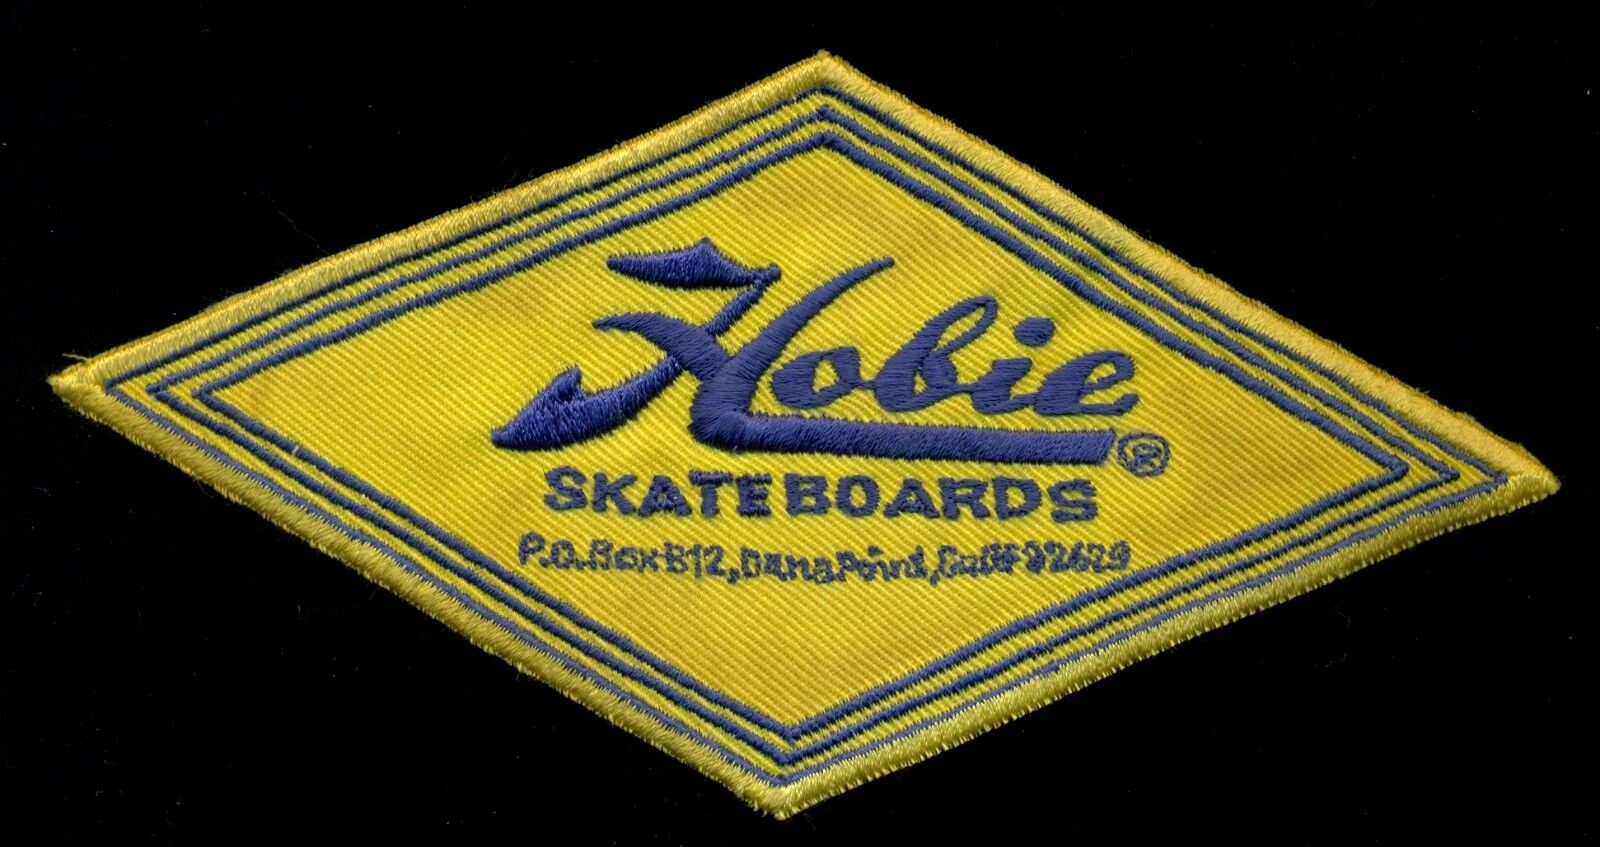 Hobie Skateboards Surf Surfing Patch N-6